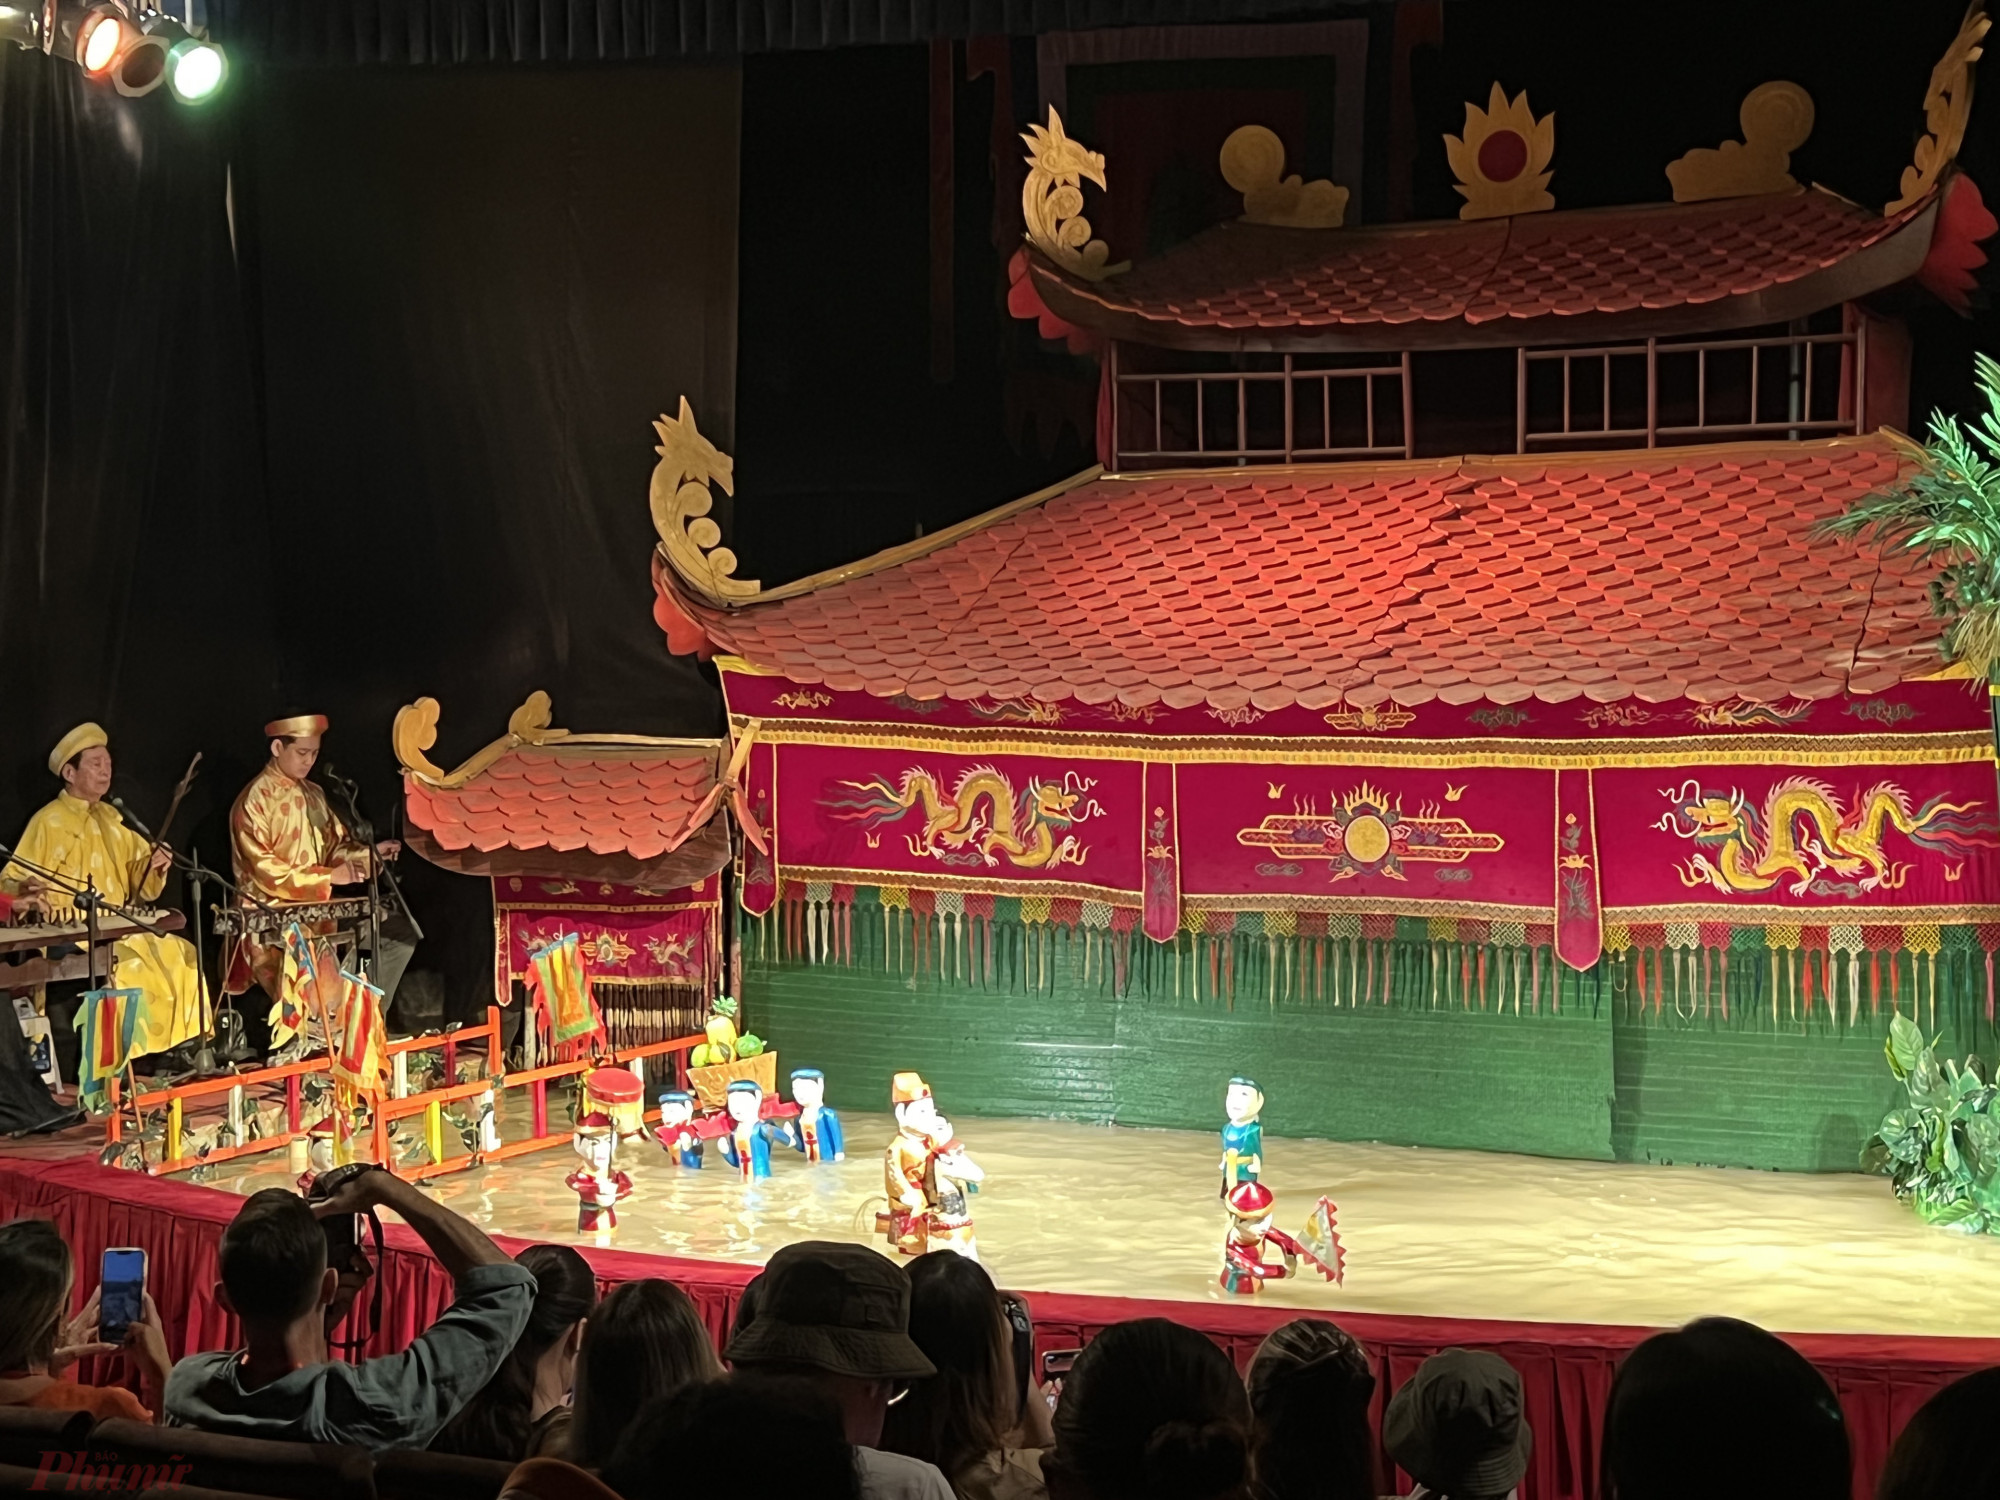 Đoàn khách xem biểu diễn múa rối nước, show diễn nghệ thuật sân khấu dân gian độc đáo của Việt Nam.